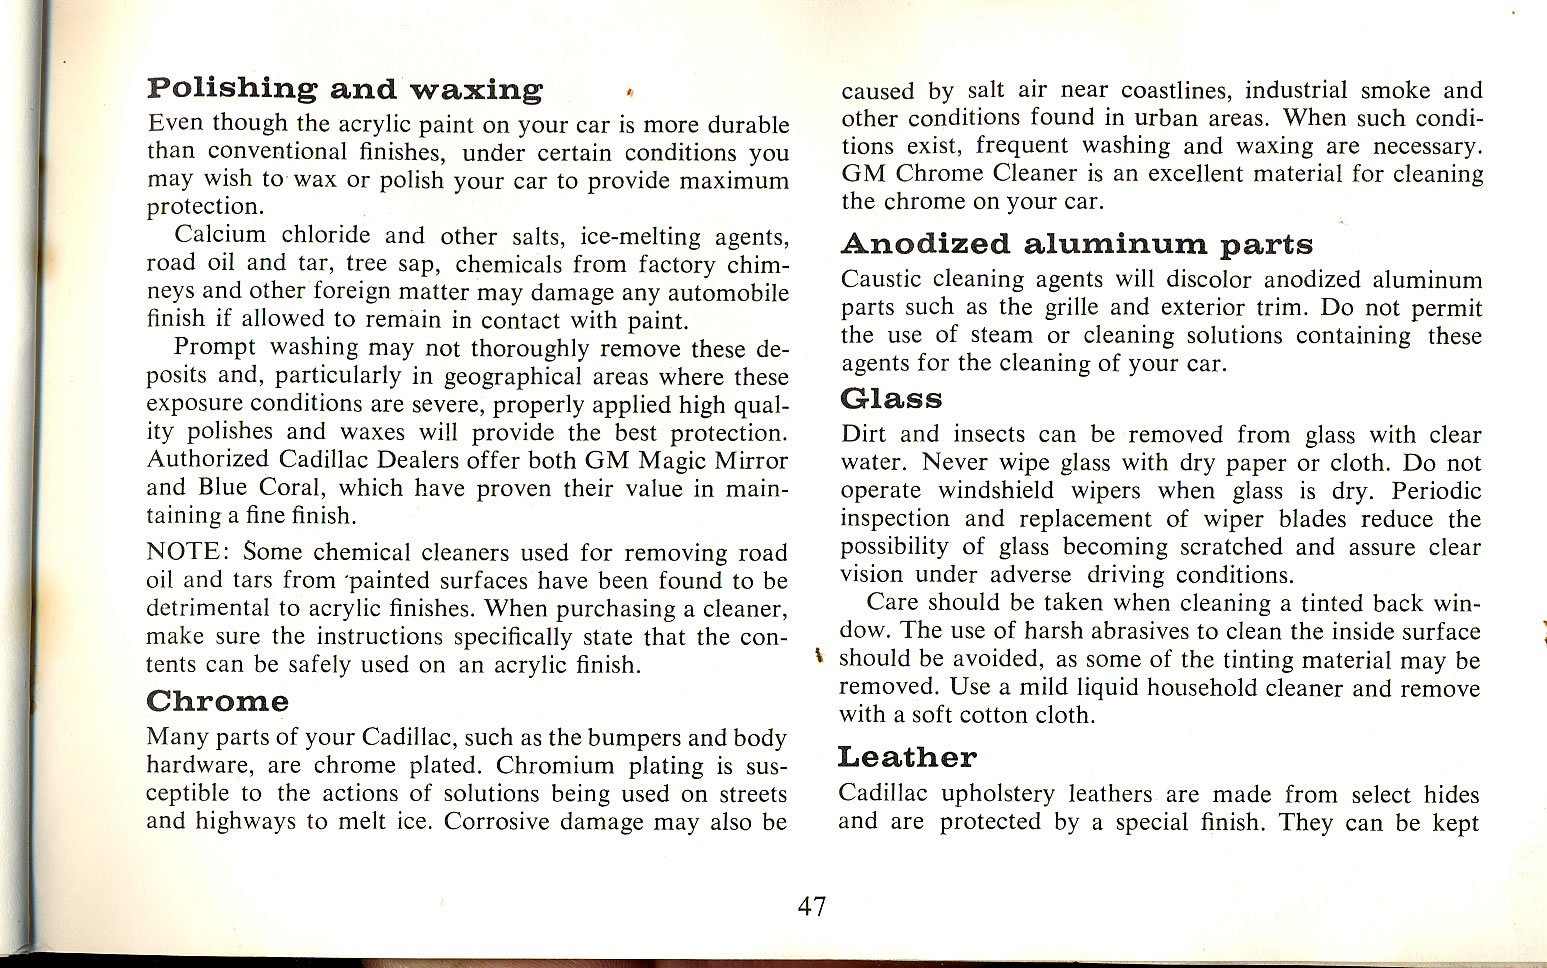 1965_Cadillac_Manual-47